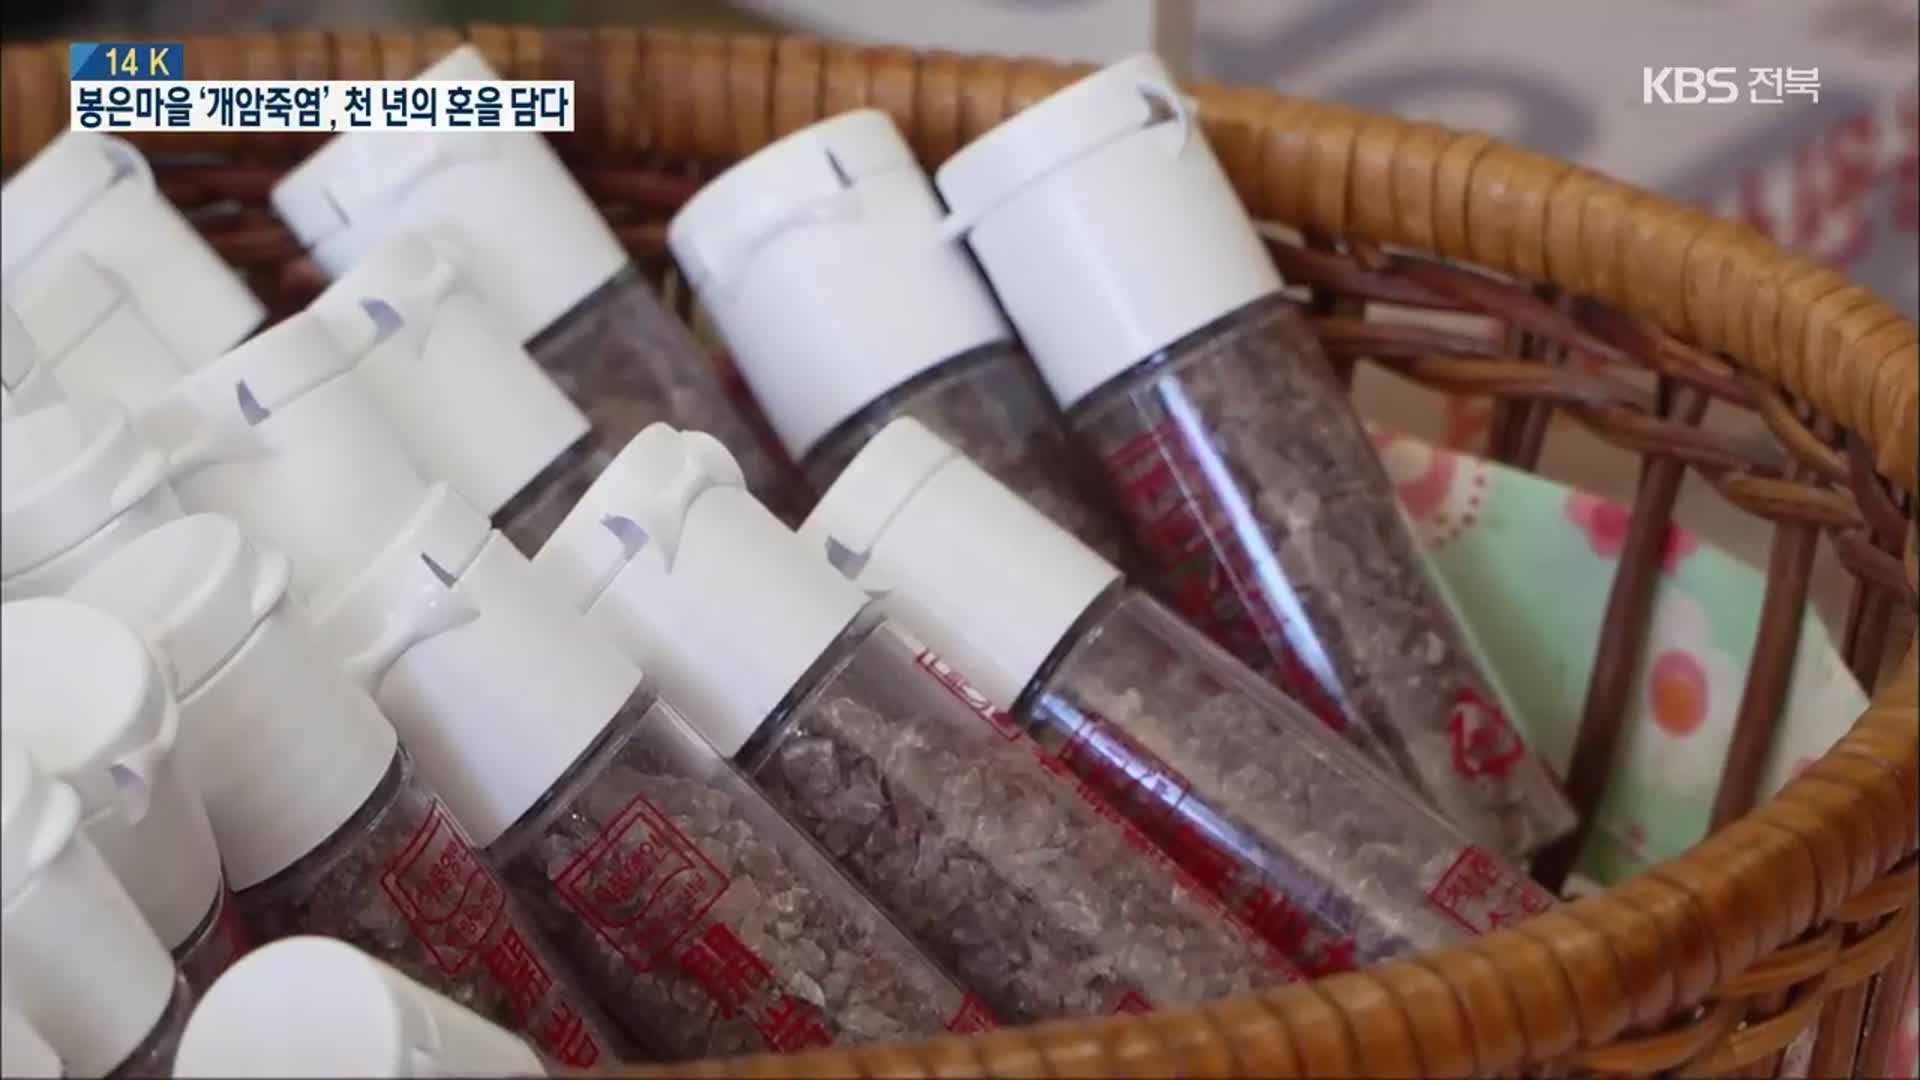 [14K] 신비의 대나무 소금 ‘개암죽염’을 지키는 봉은마을 사람들